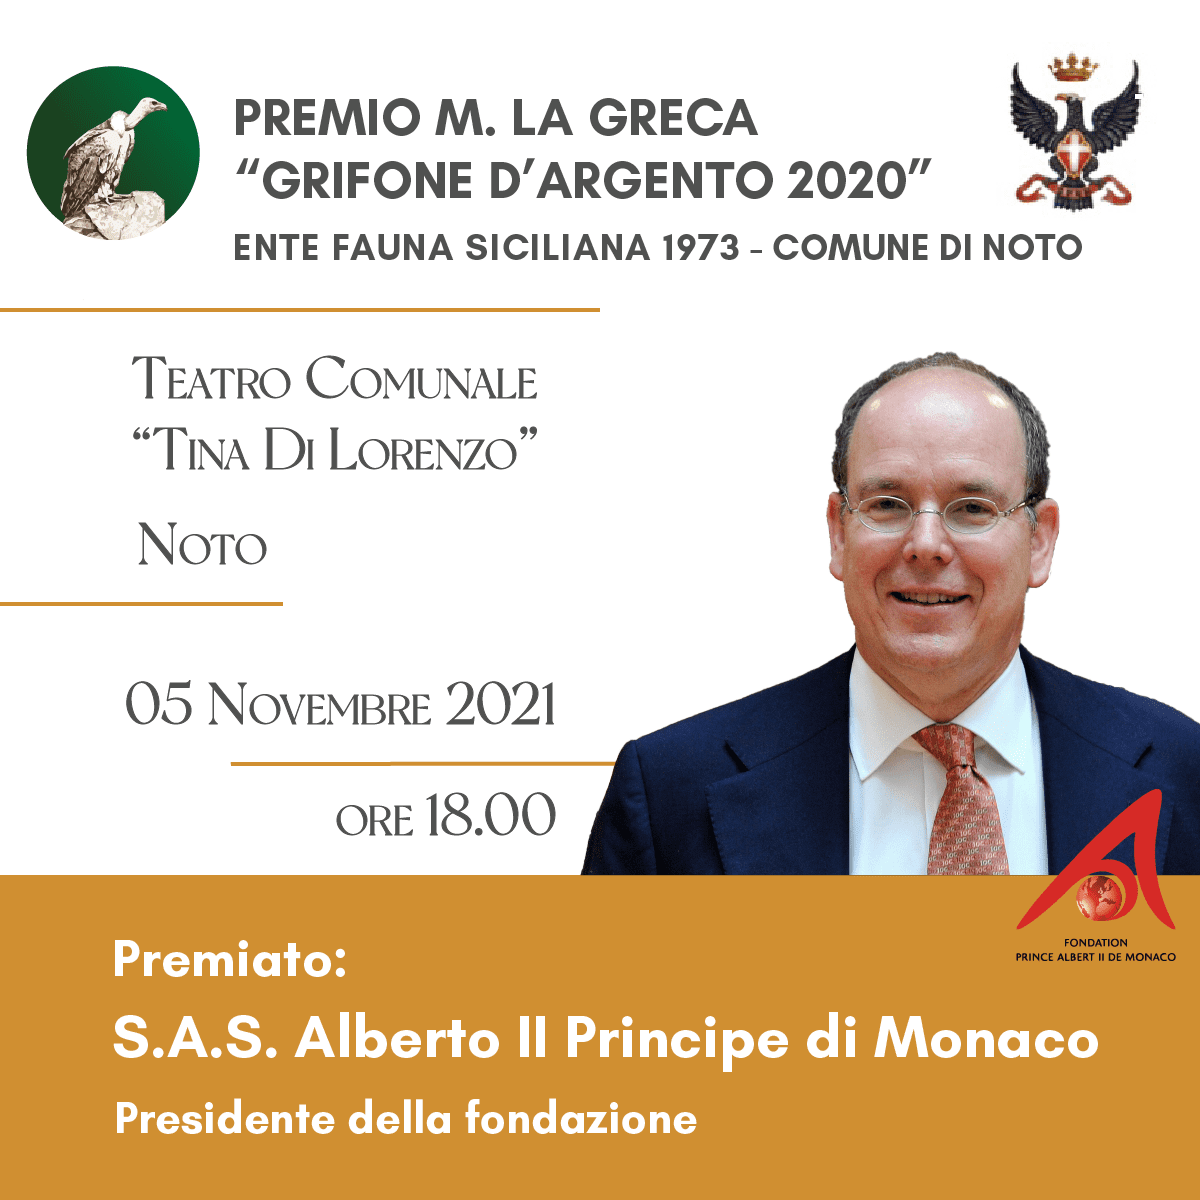 PREMIO M. LA GRECA 2020 a S.A.S. Alberto II Principe di Monaco